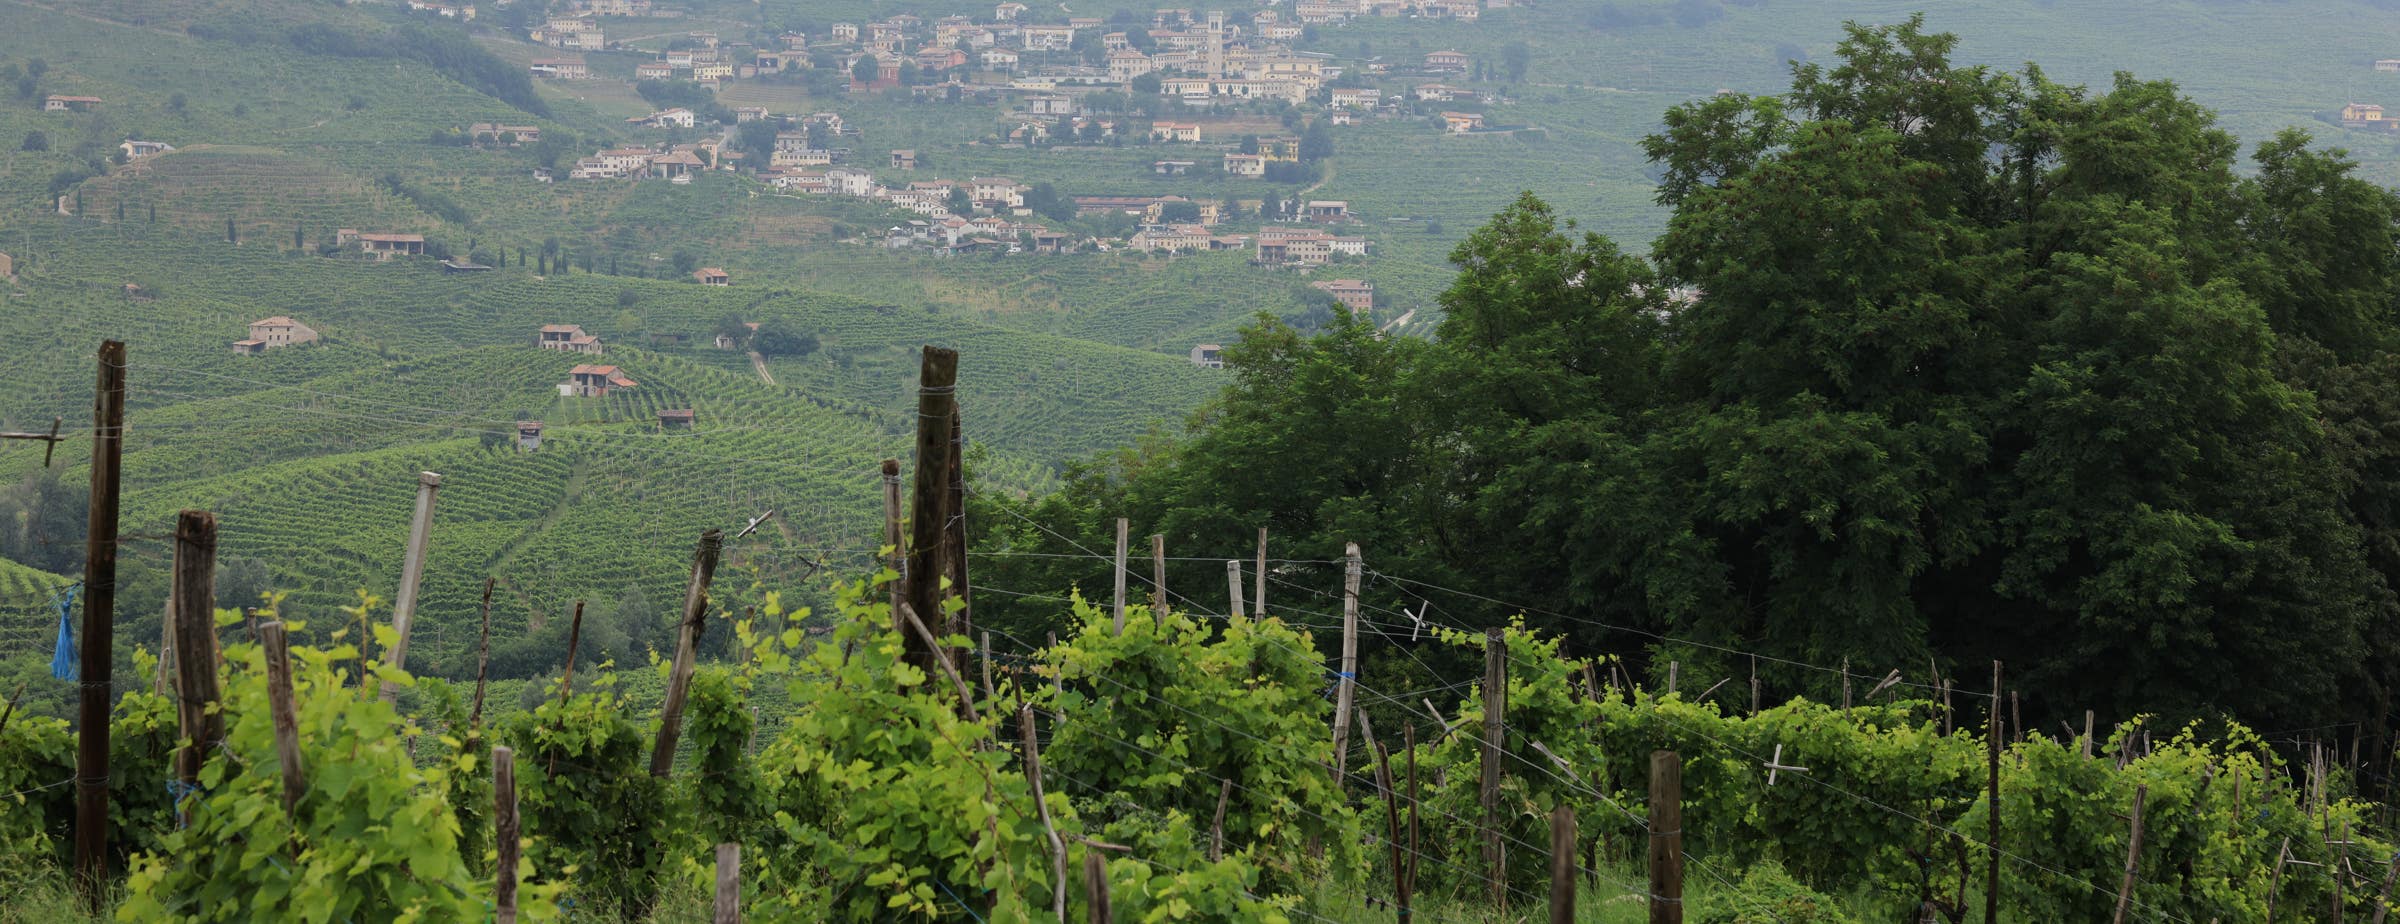 Vista desde un viñedo que muestra vides cercanas en la parte delantera y más viñedos y un pequeño pueblo en la distancia. 